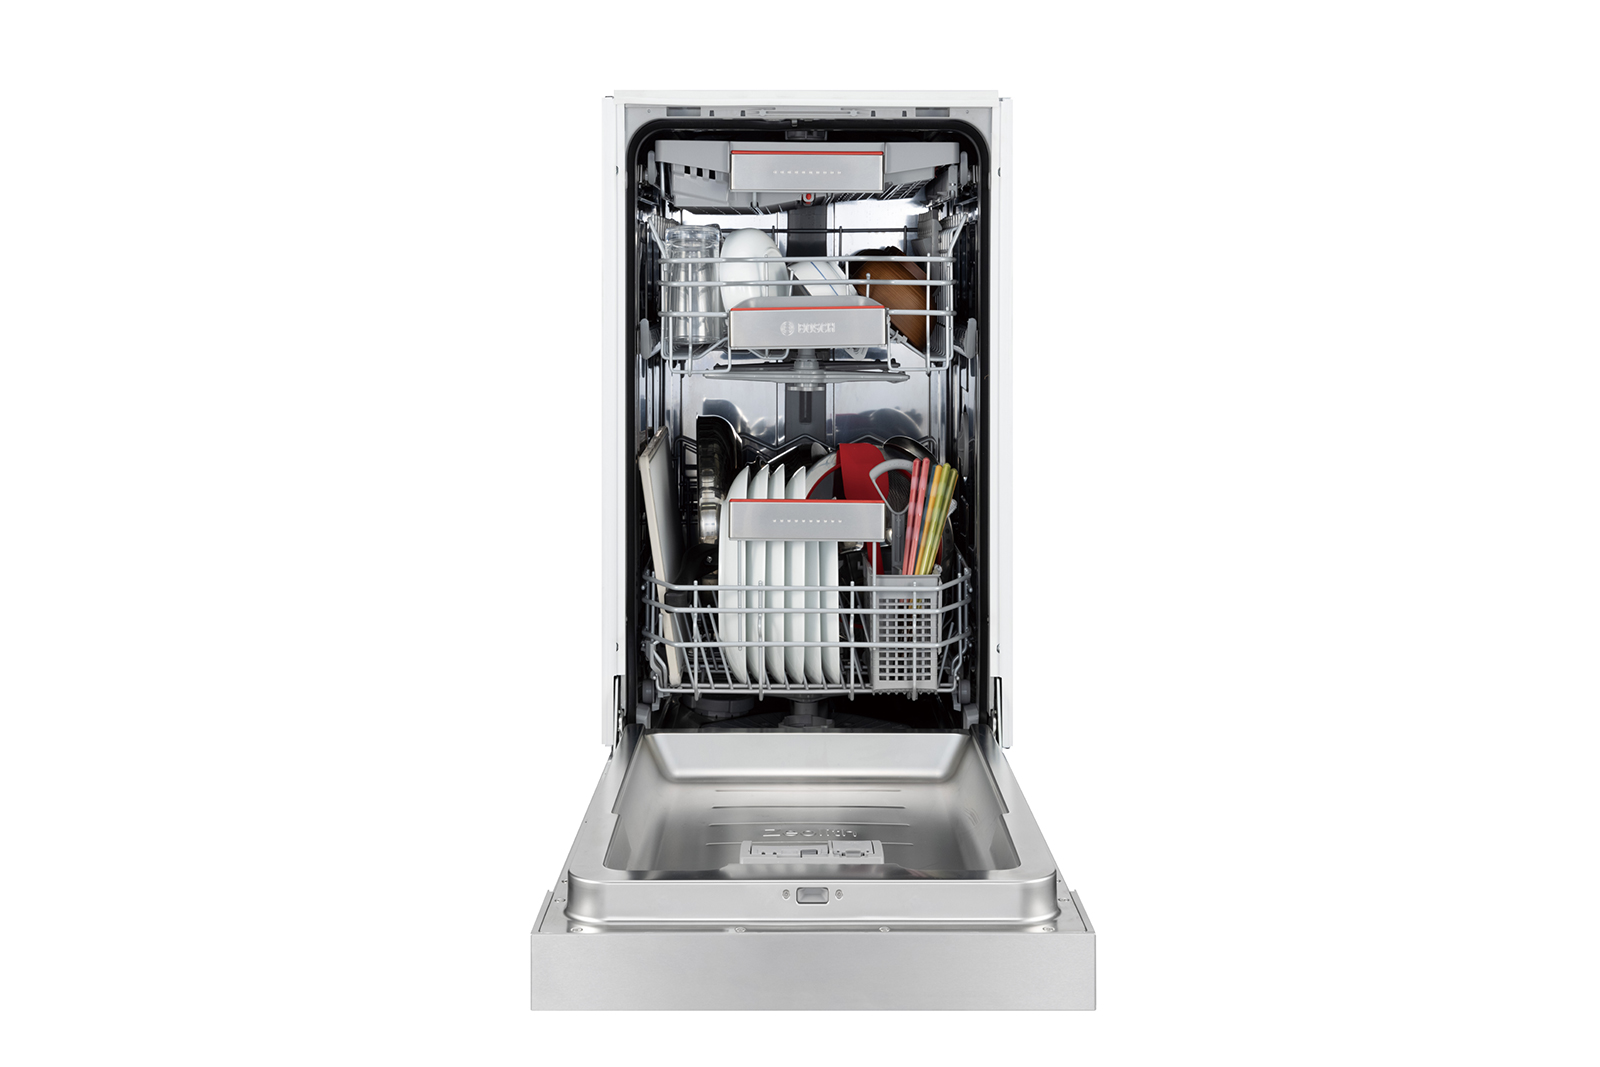 ビルトイン食洗機 フロントオープン W450 前面操作タイプ ゼオライトドライ（本体のみ） KB-PT004-08-G234 およそ8人分の基本的な食器を一気に洗浄できる容量です。2人暮らしで1日分の食器量がまとめて洗える容量とお考えください